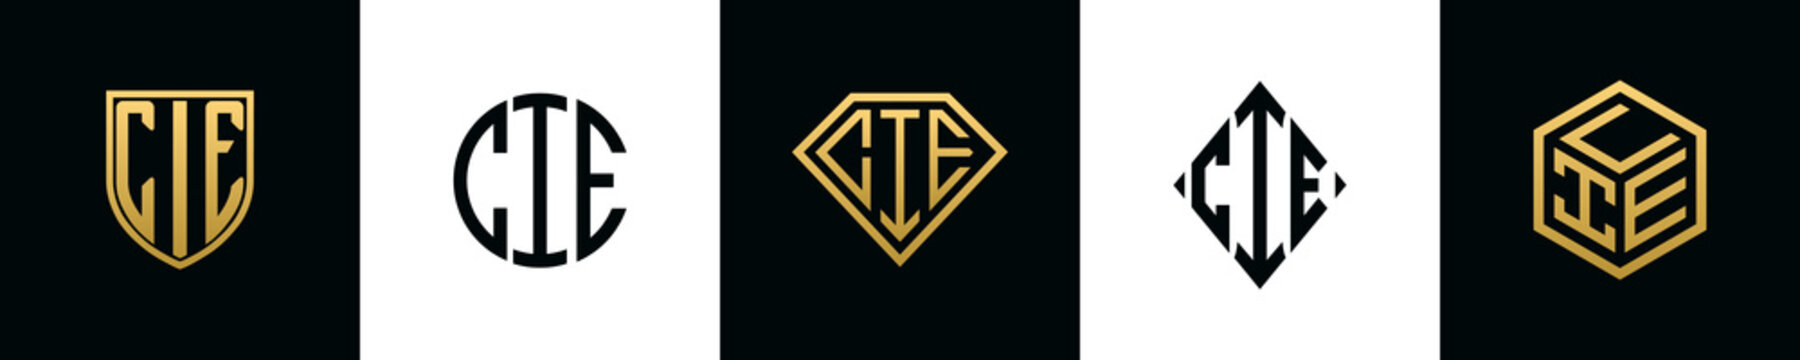 Initial letters CIE logo designs Bundle